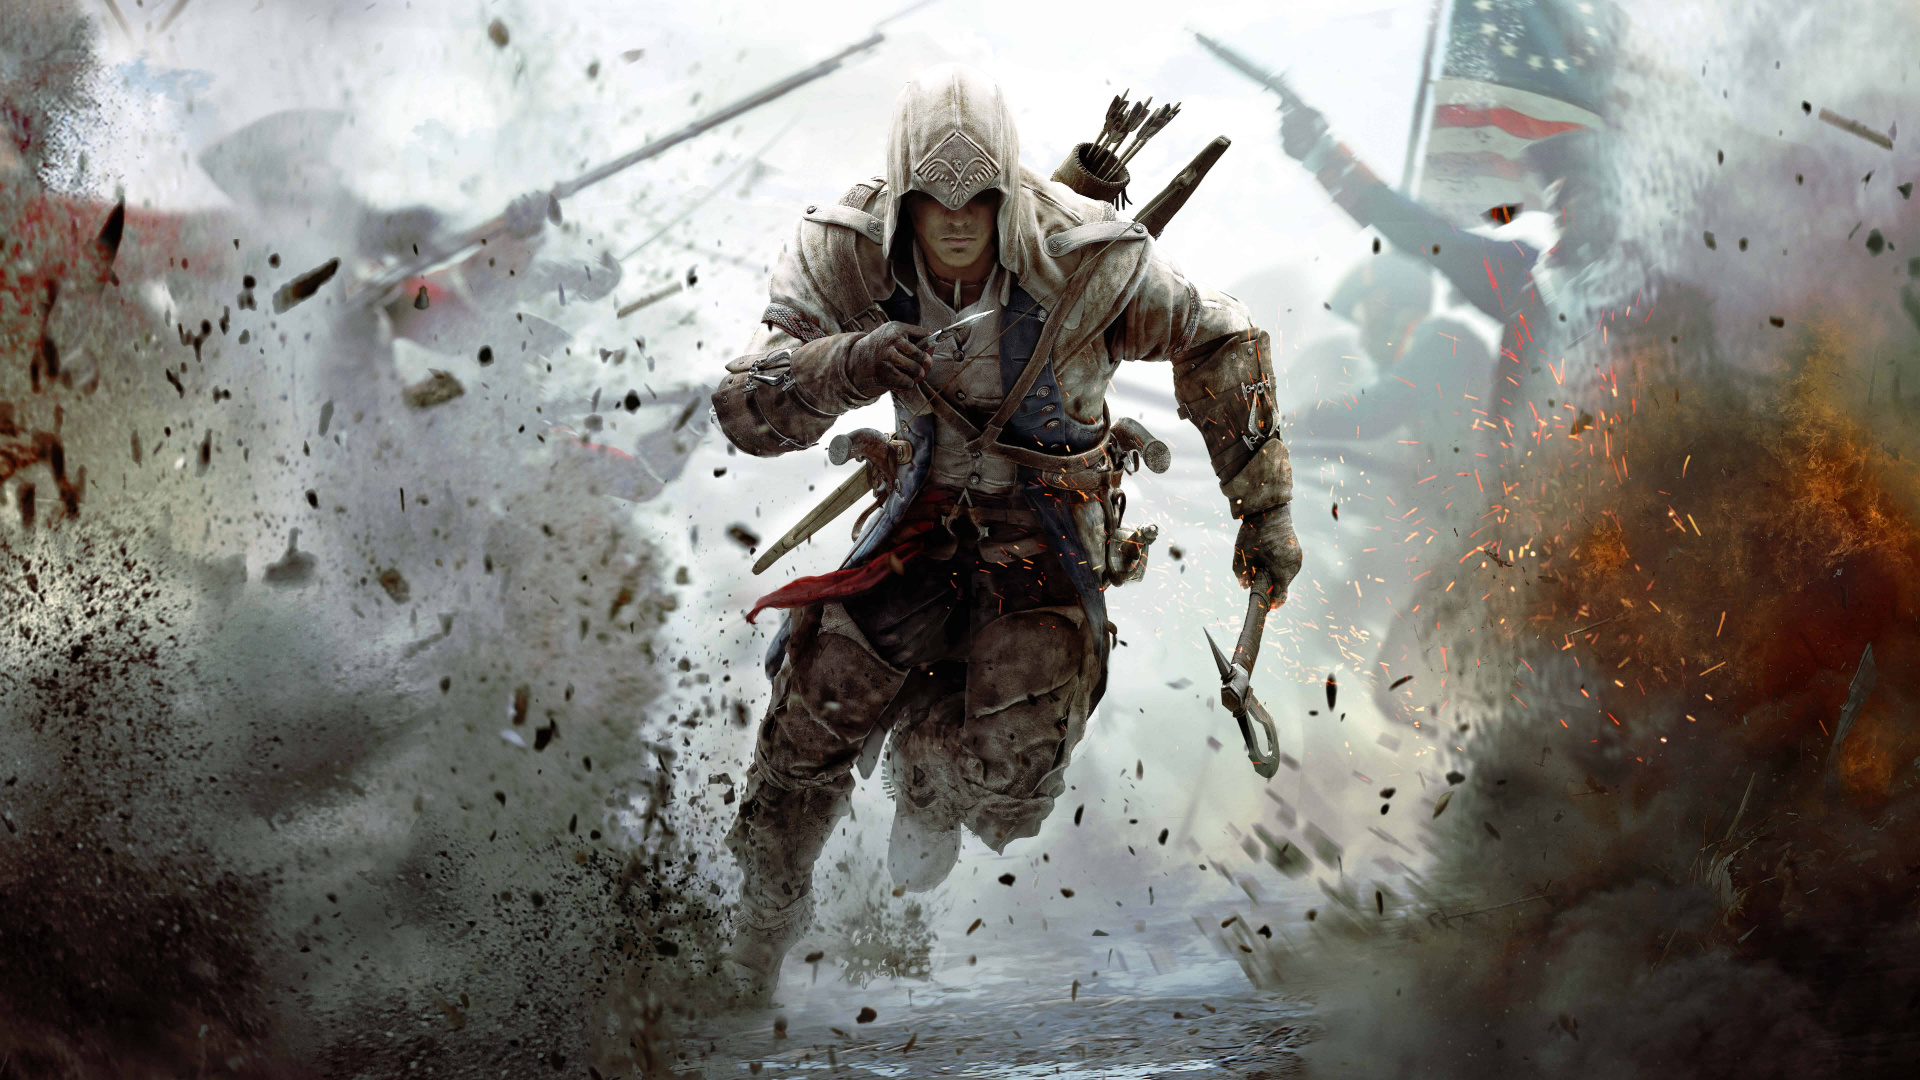 Assassins Creed III, Ubisoft, Vidéo, Les Jeux Vidéo, Assassins Creed Origines. Wallpaper in 1920x1080 Resolution